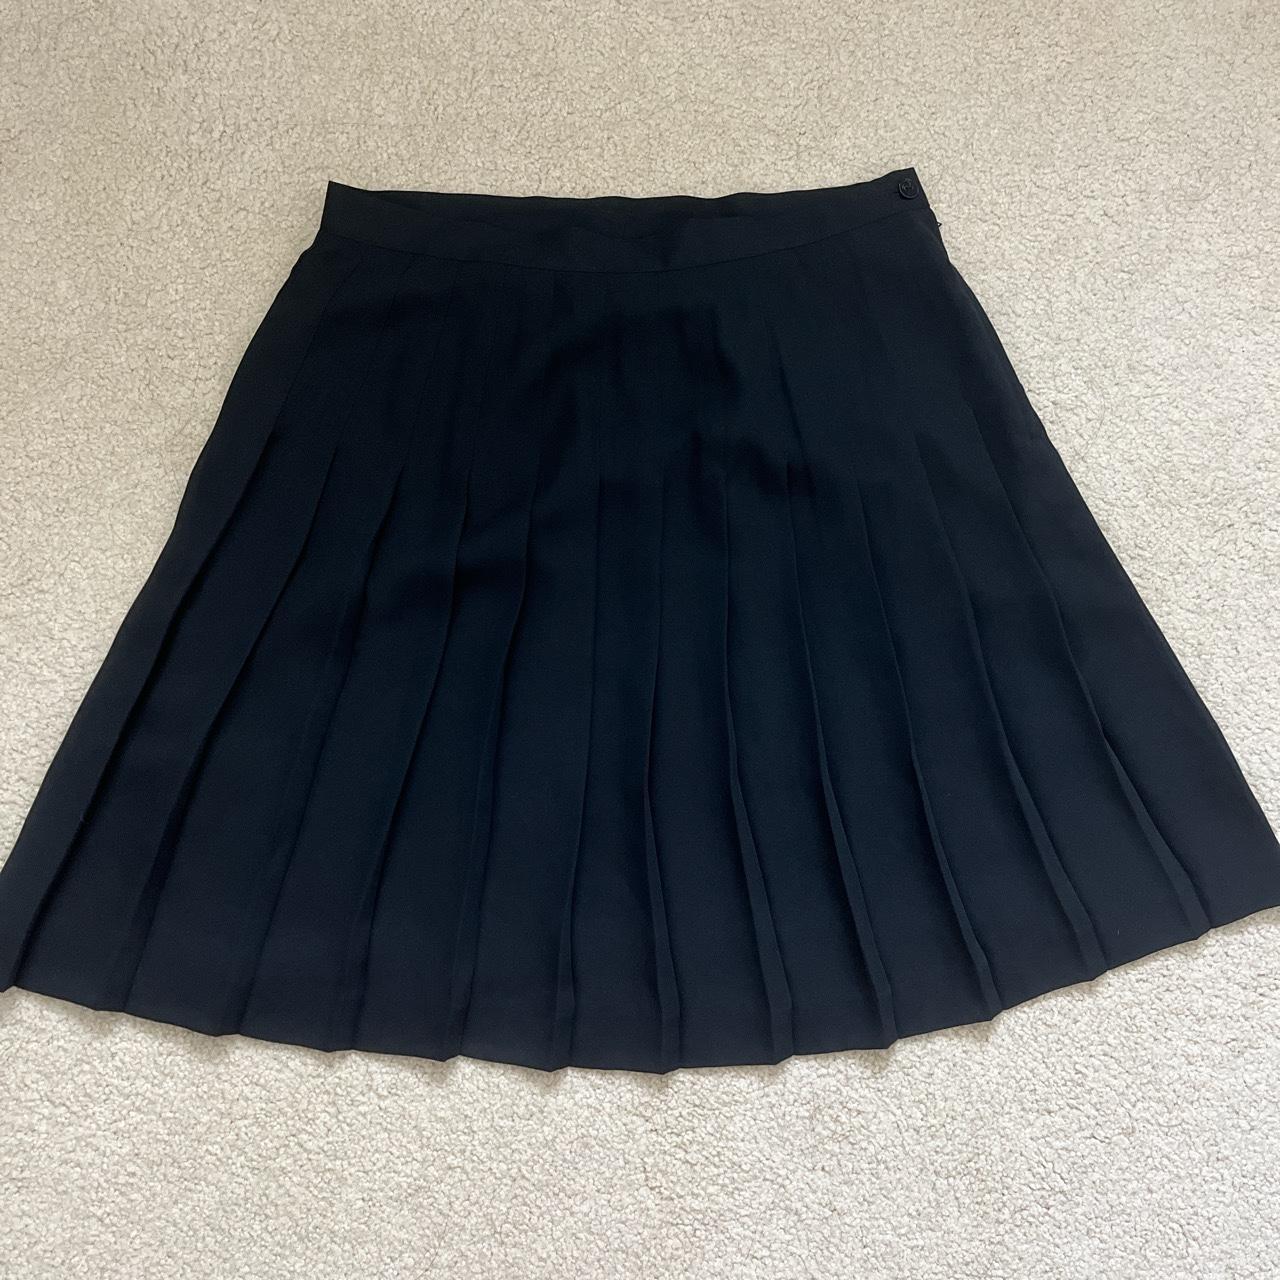 Black pleated midi skirt • Lightly used, no flaws •... - Depop